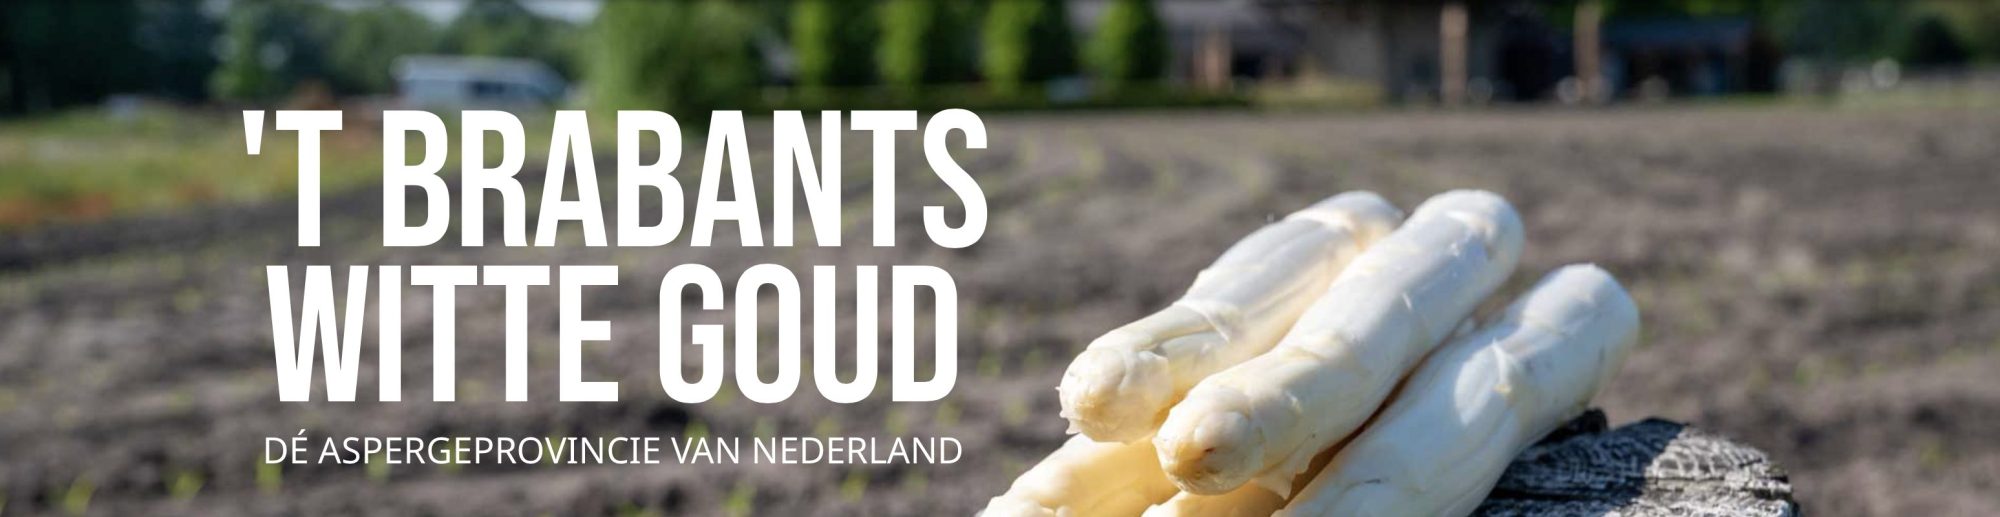 De lekkerste Brabantse aspergeham komt nog steeds uit Nuenen! 